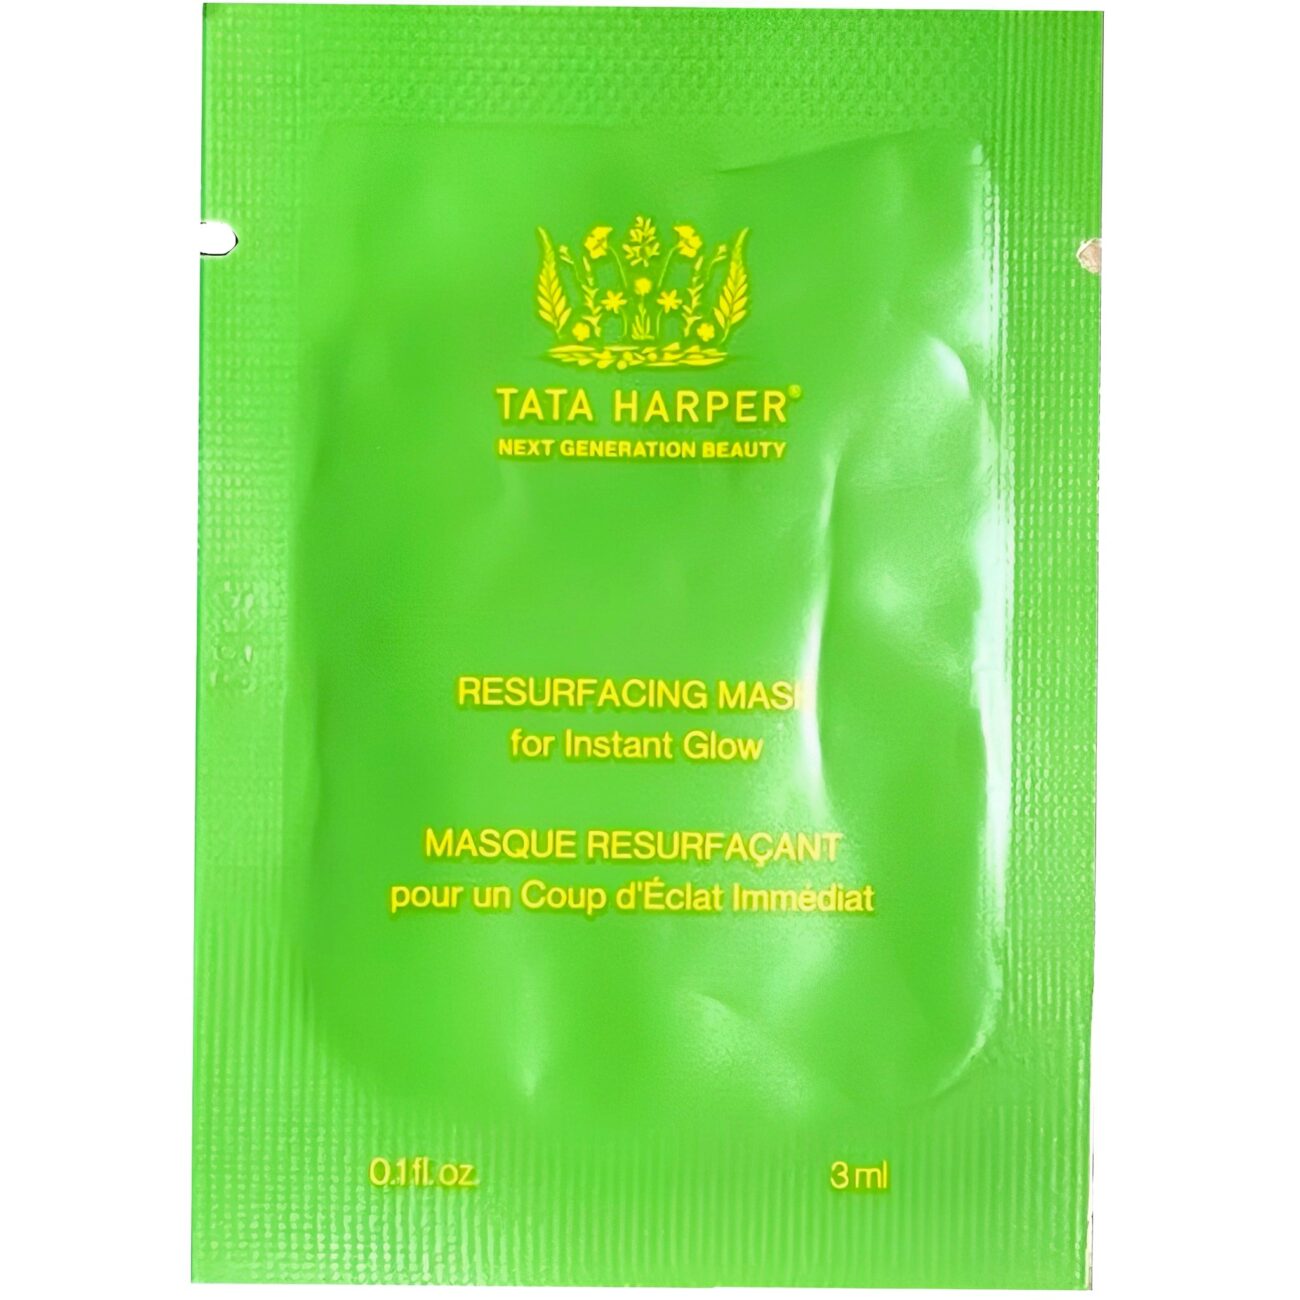 Resurfacing Mask Sample-Tata Harper